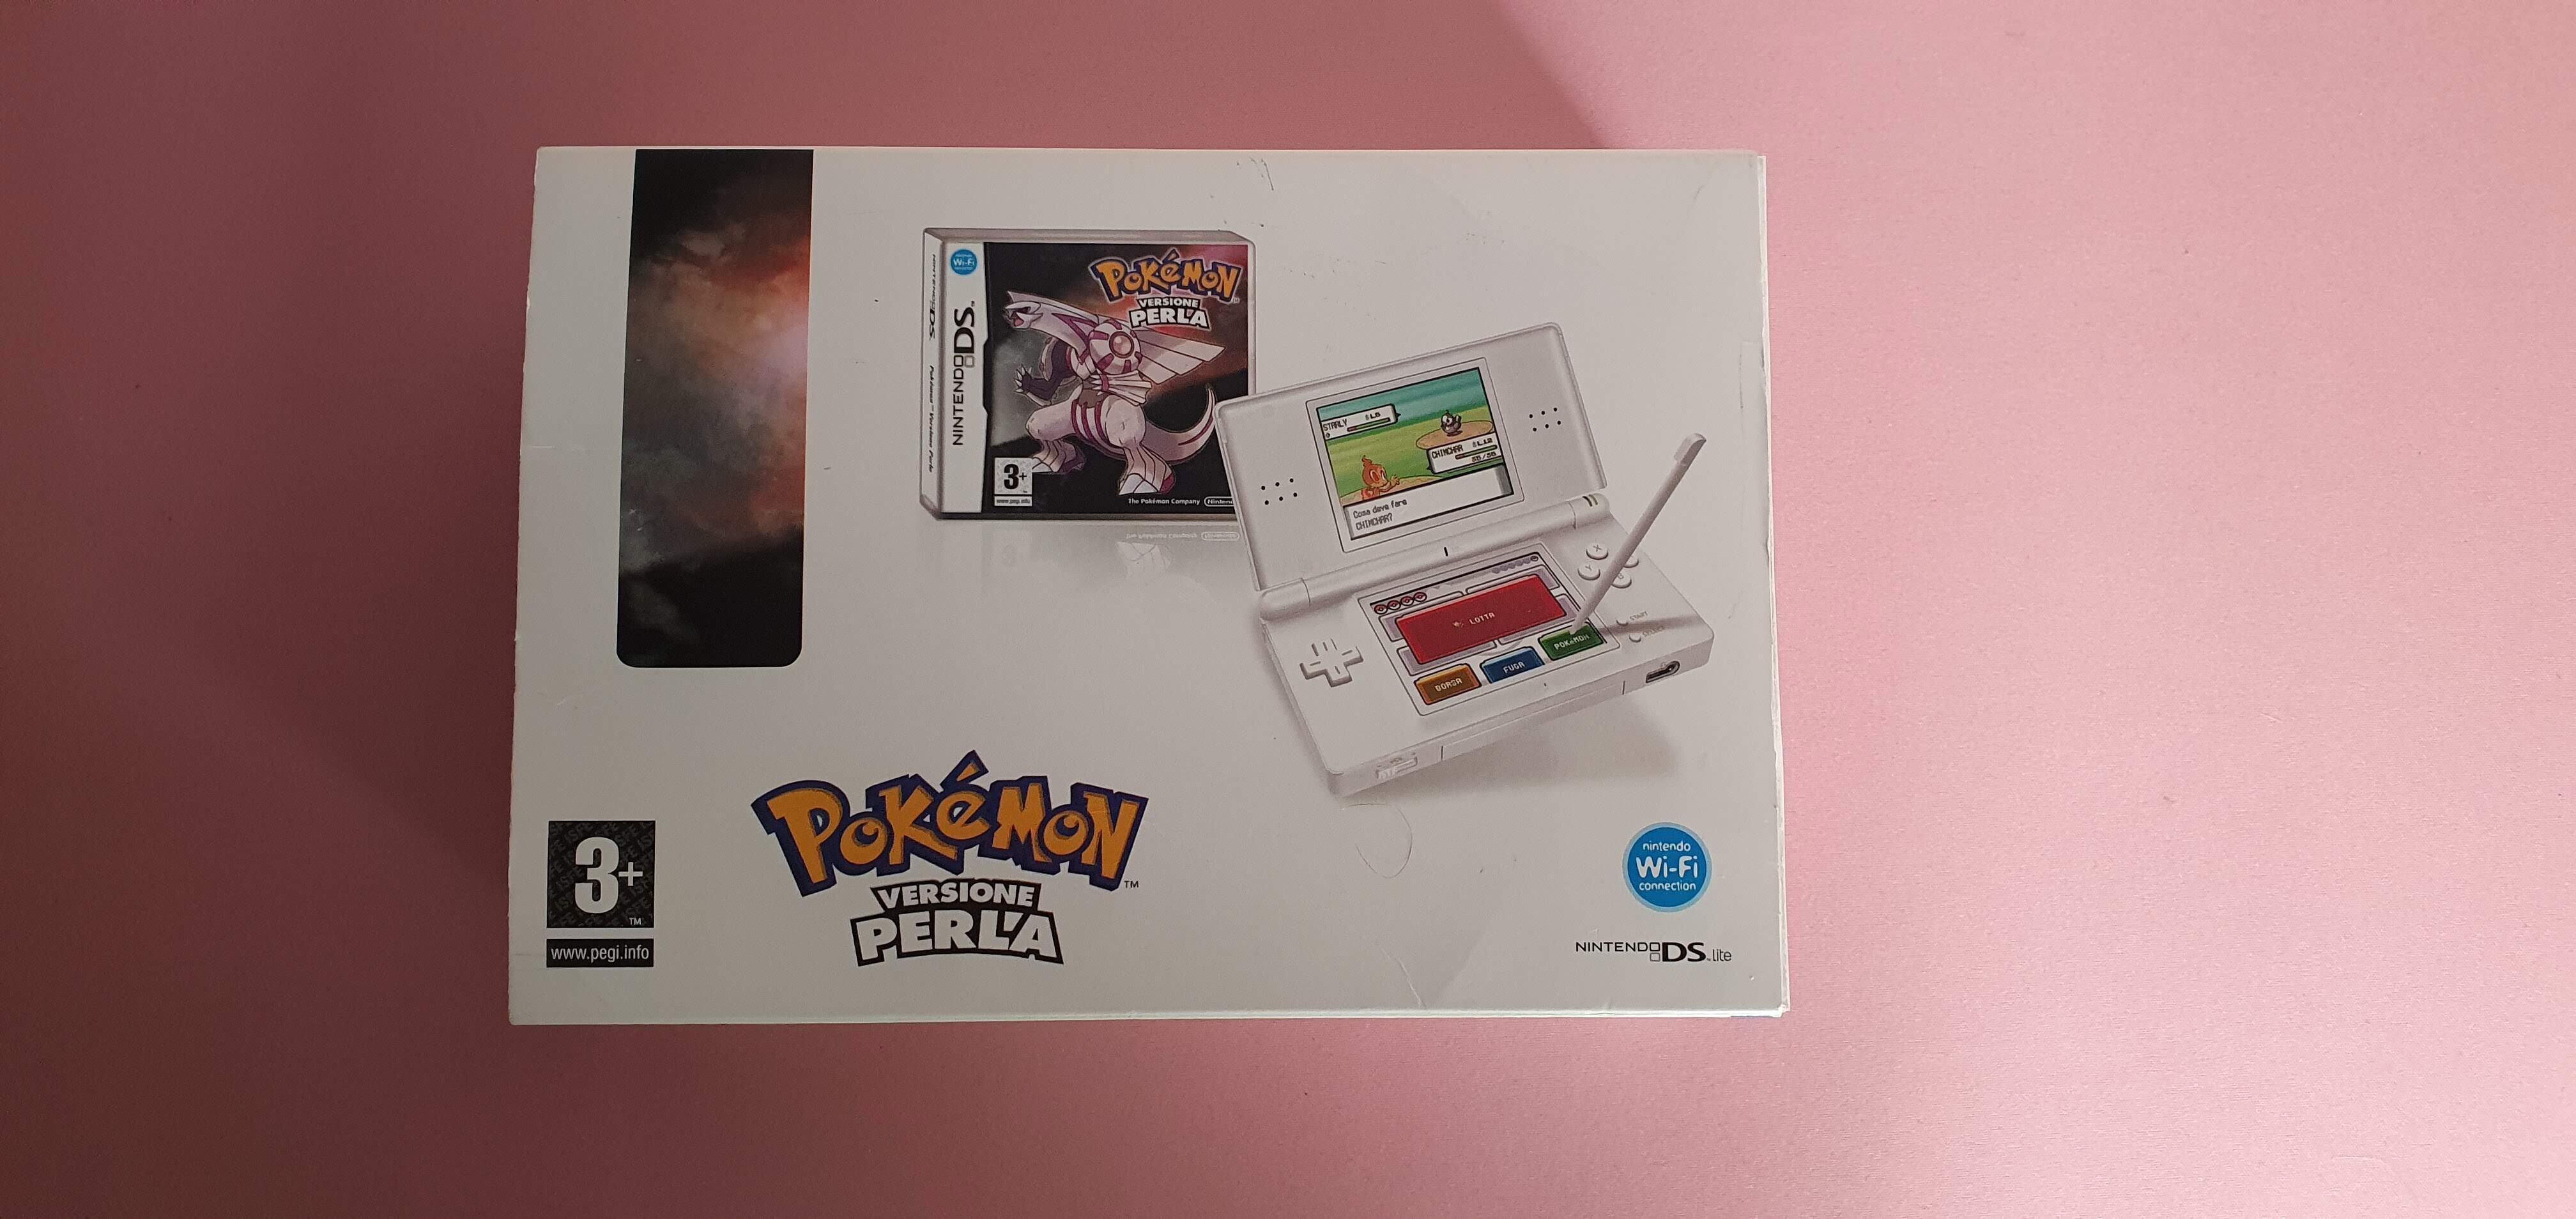  Nintendo DS lite-Pokémon Pearl Bundle [IT]